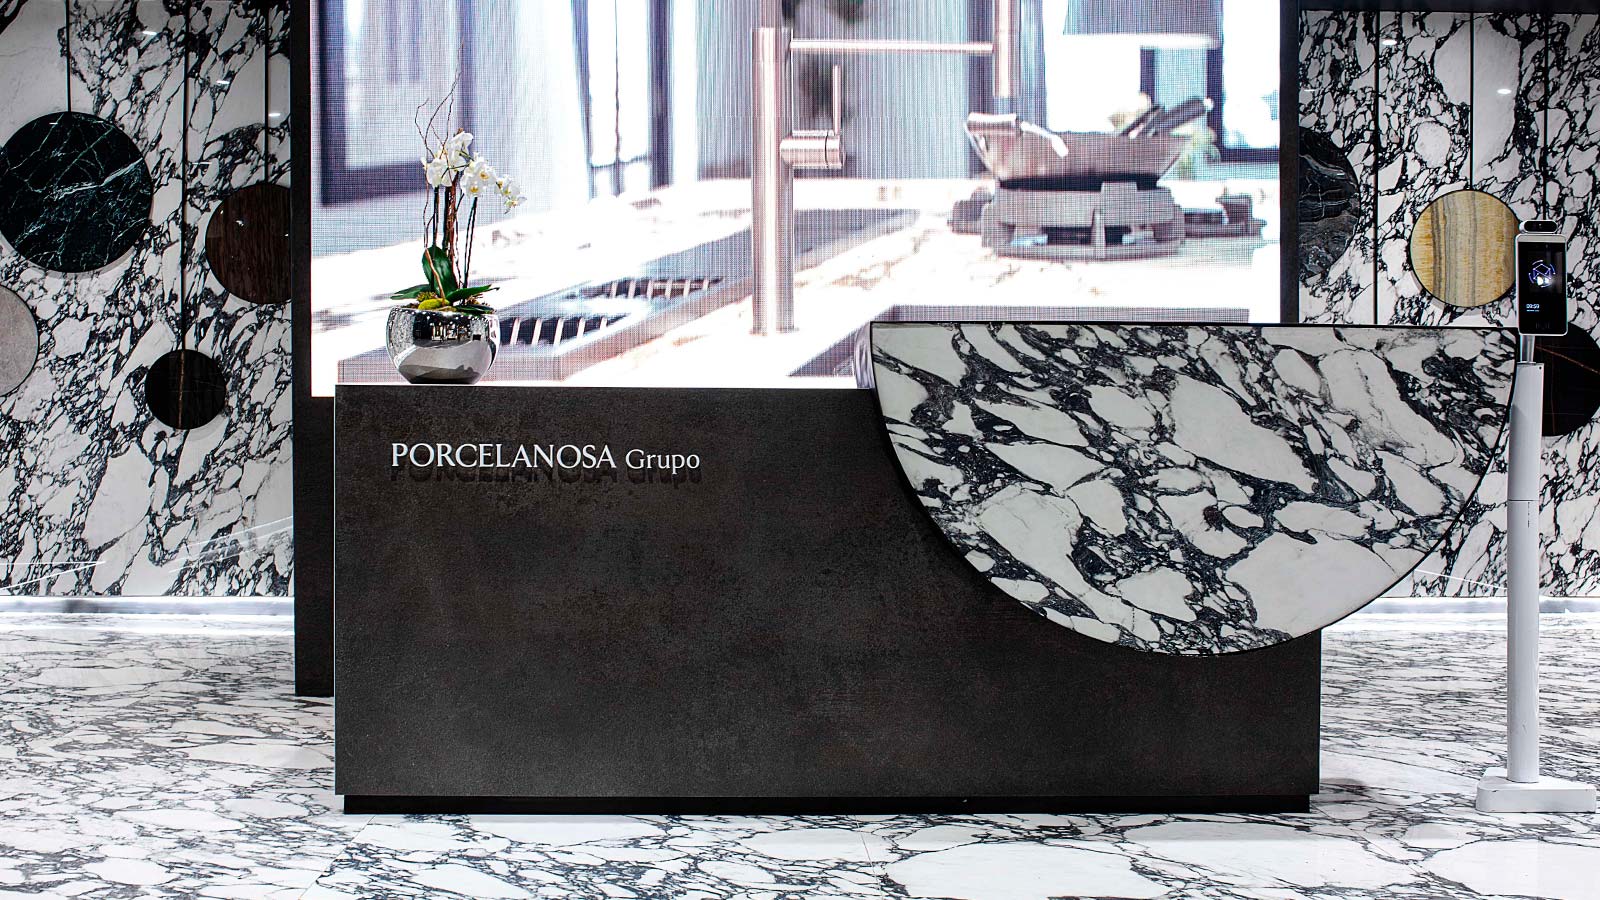 Porcelanosa consolide sa présence au Mexique grâce à de nouveaux designs et boutiques